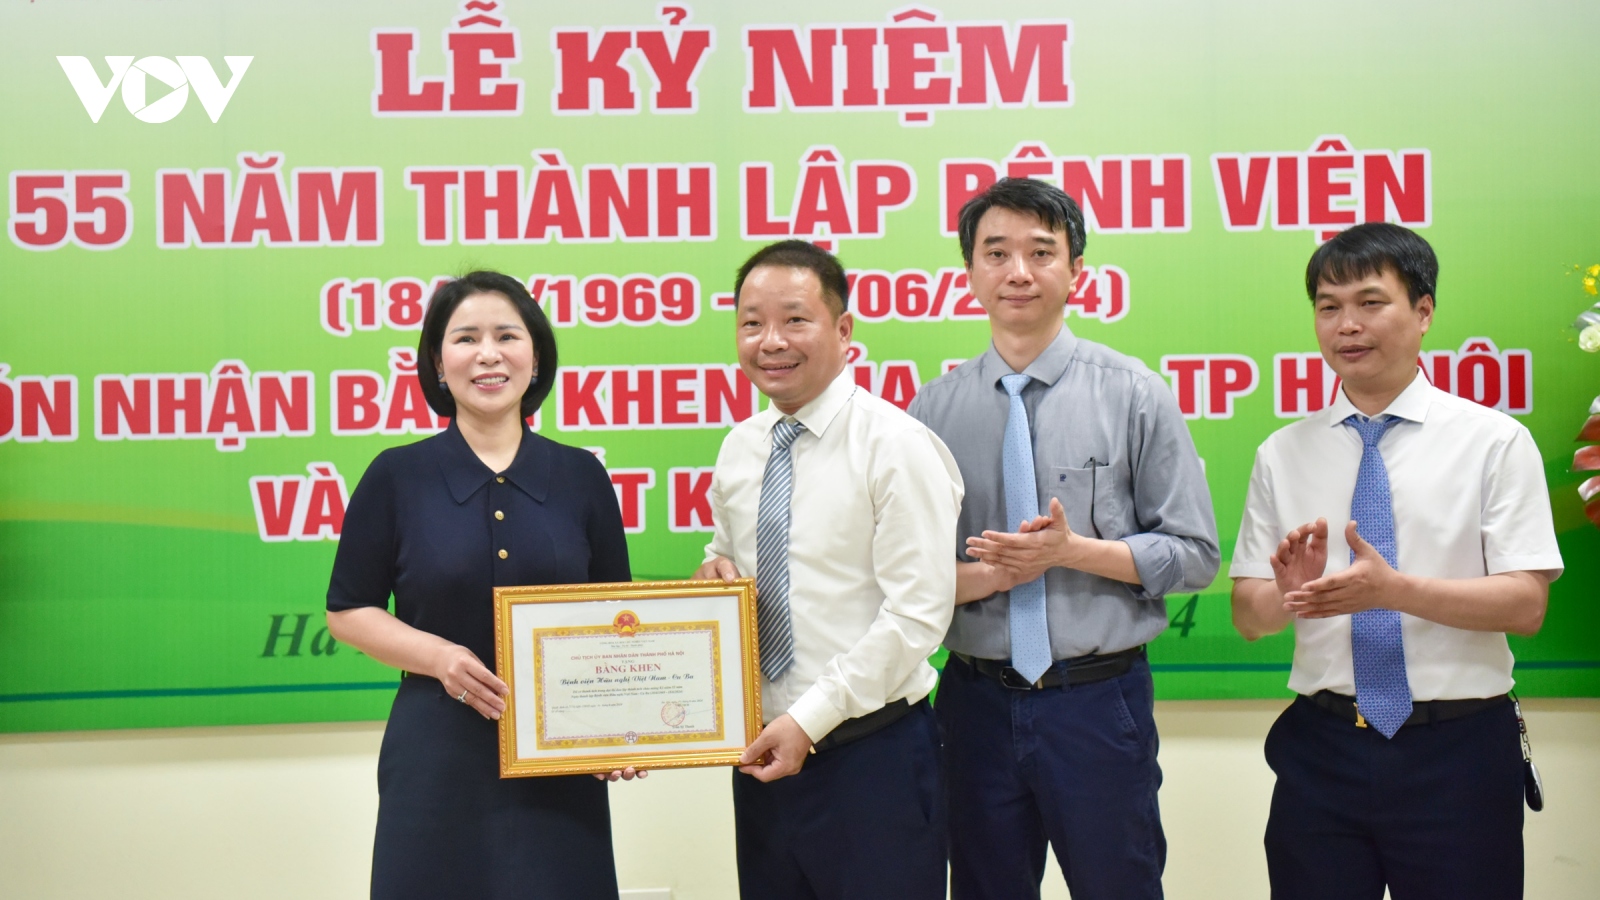 Bệnh viện Hữu nghị Việt Nam - Cu Ba kỷ niệm 55 năm thành lập